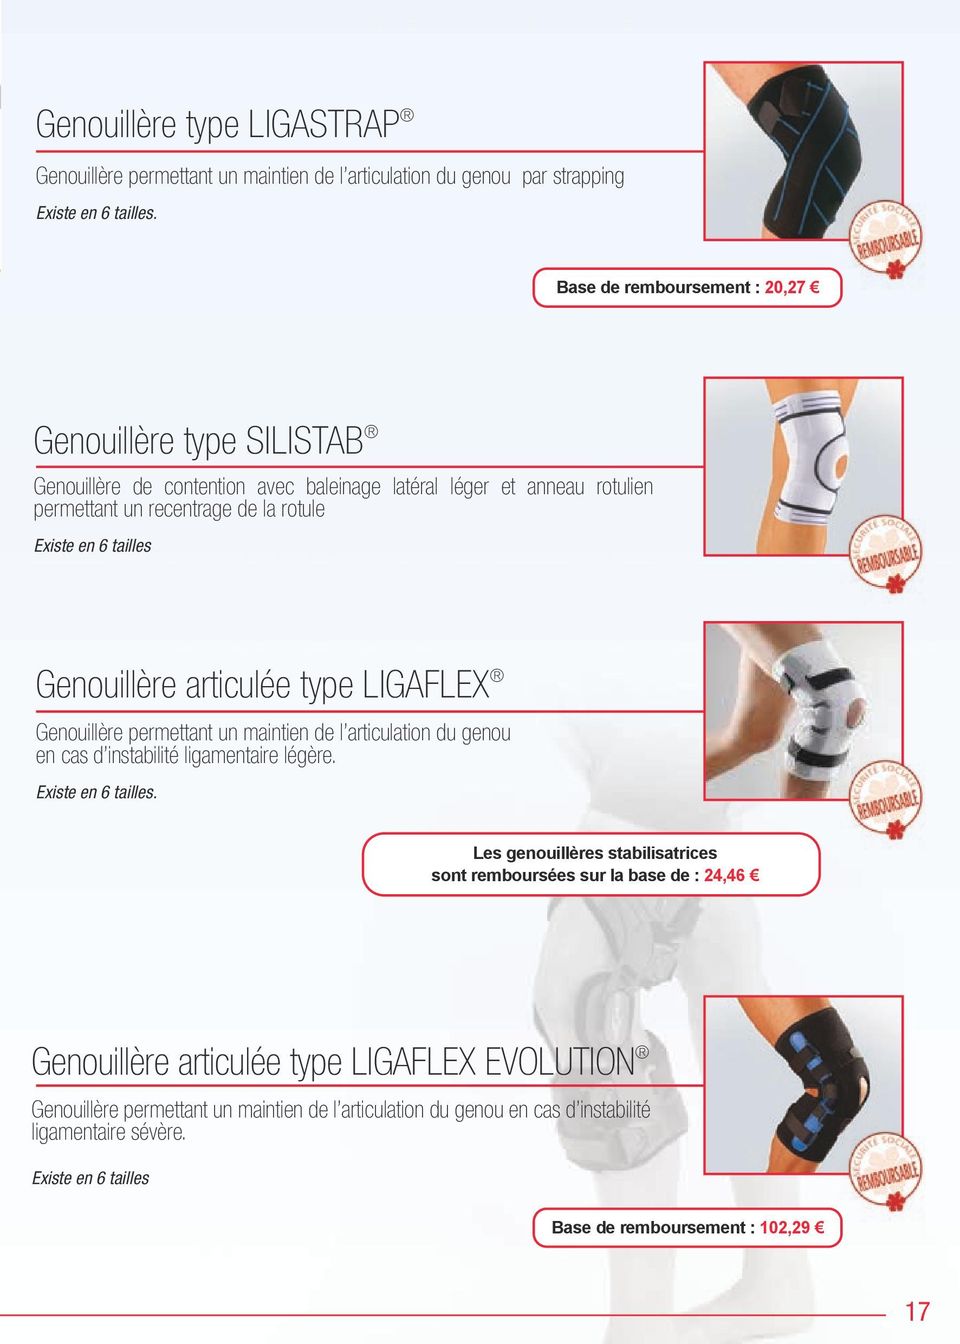 Genouillère articulée type LIGAFLEX Genouillère permettant un maintien de l articulation du genou en cas d instabilité ligamentaire légère. Existe en 6 tailles.